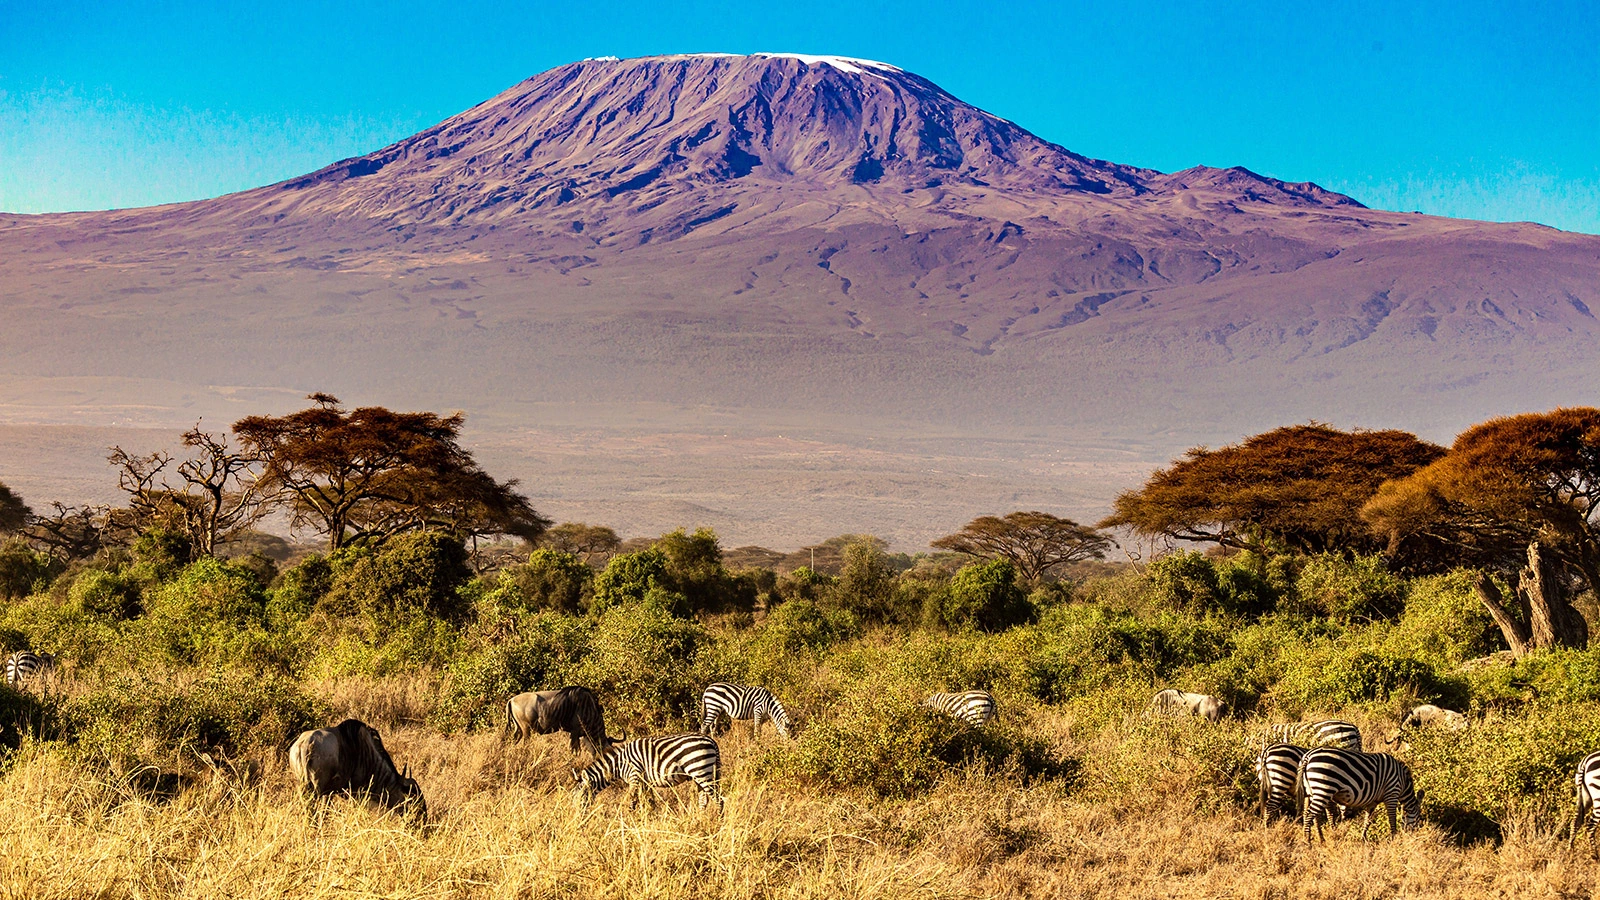 <p>Бархатный сезон&nbsp;&mdash; он и в Африке может быть бархатным. Вид на Килиманджаро</p>